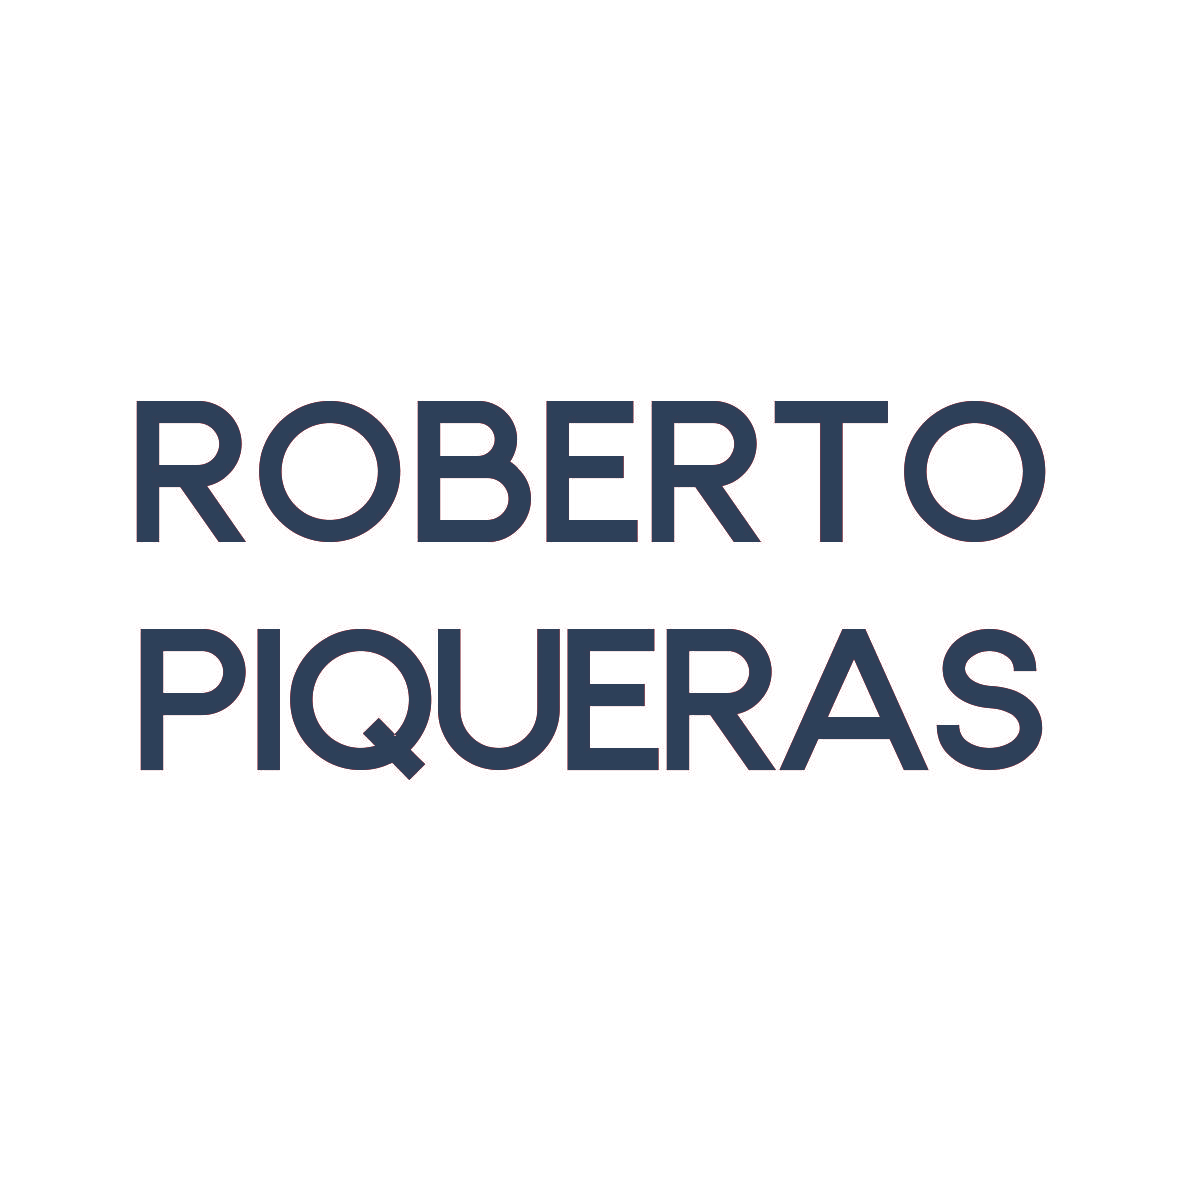 ROBERTO PIQUERAS